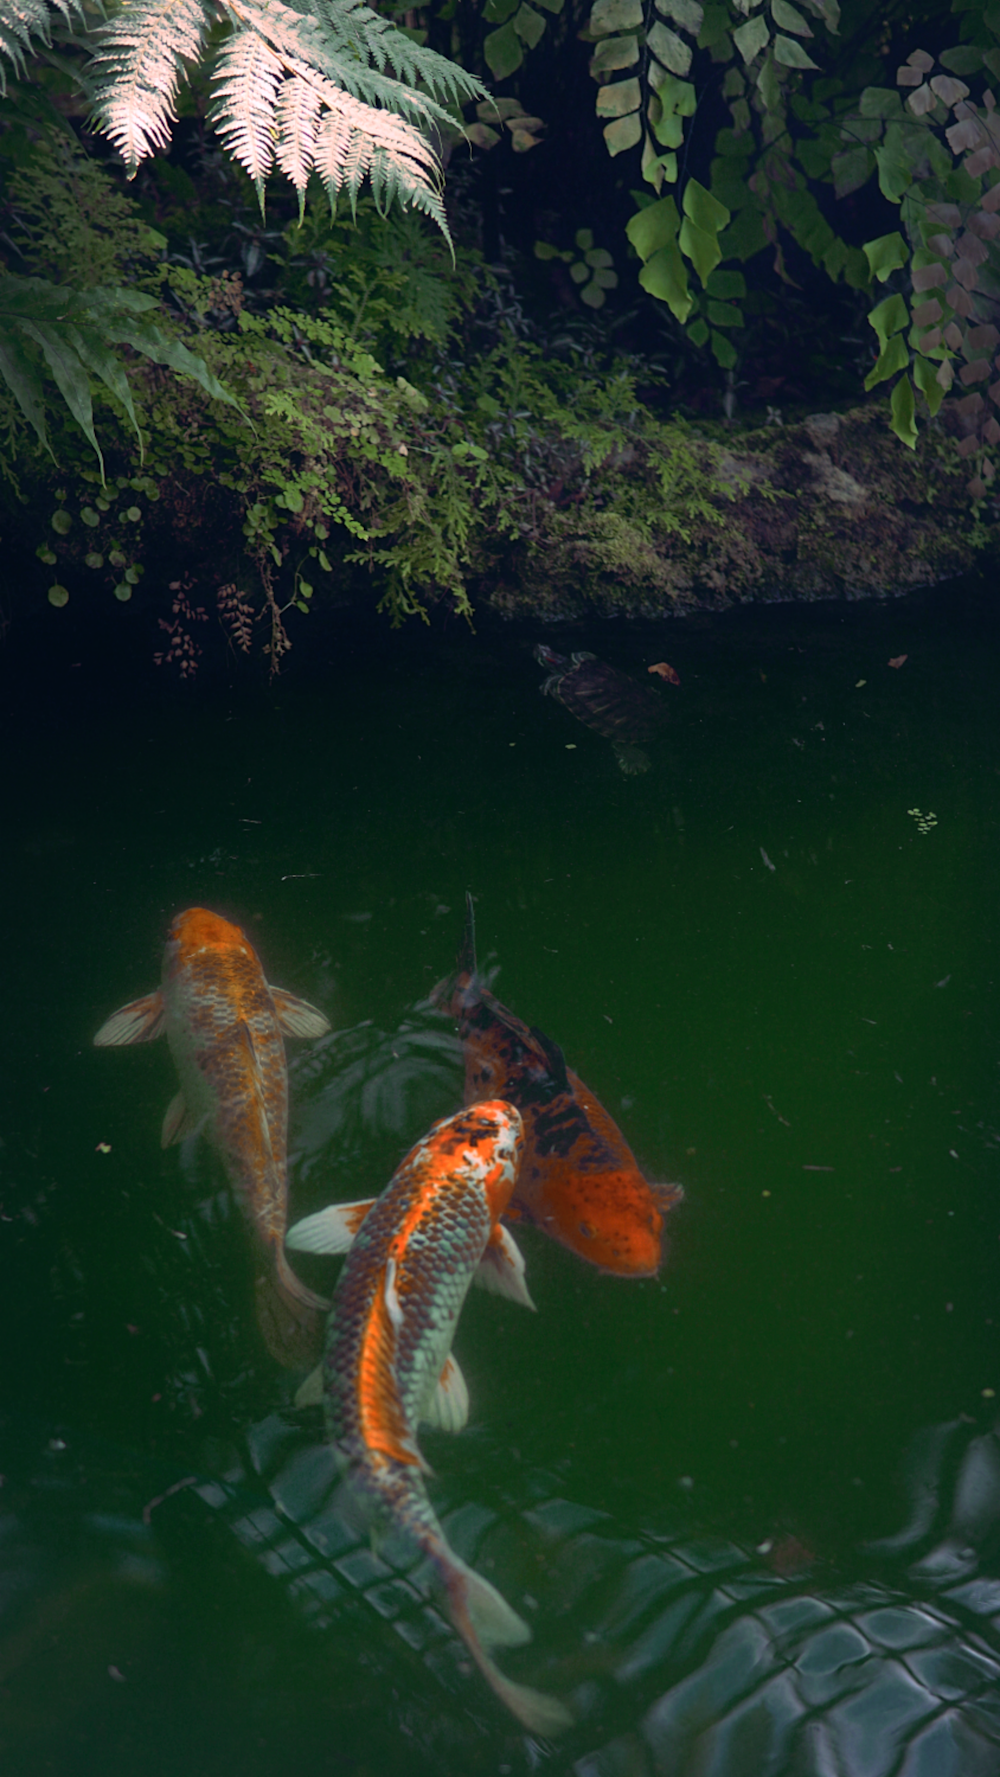 zwei orangefarbene und weiße Koi-Fische schwimmen in einem Teich